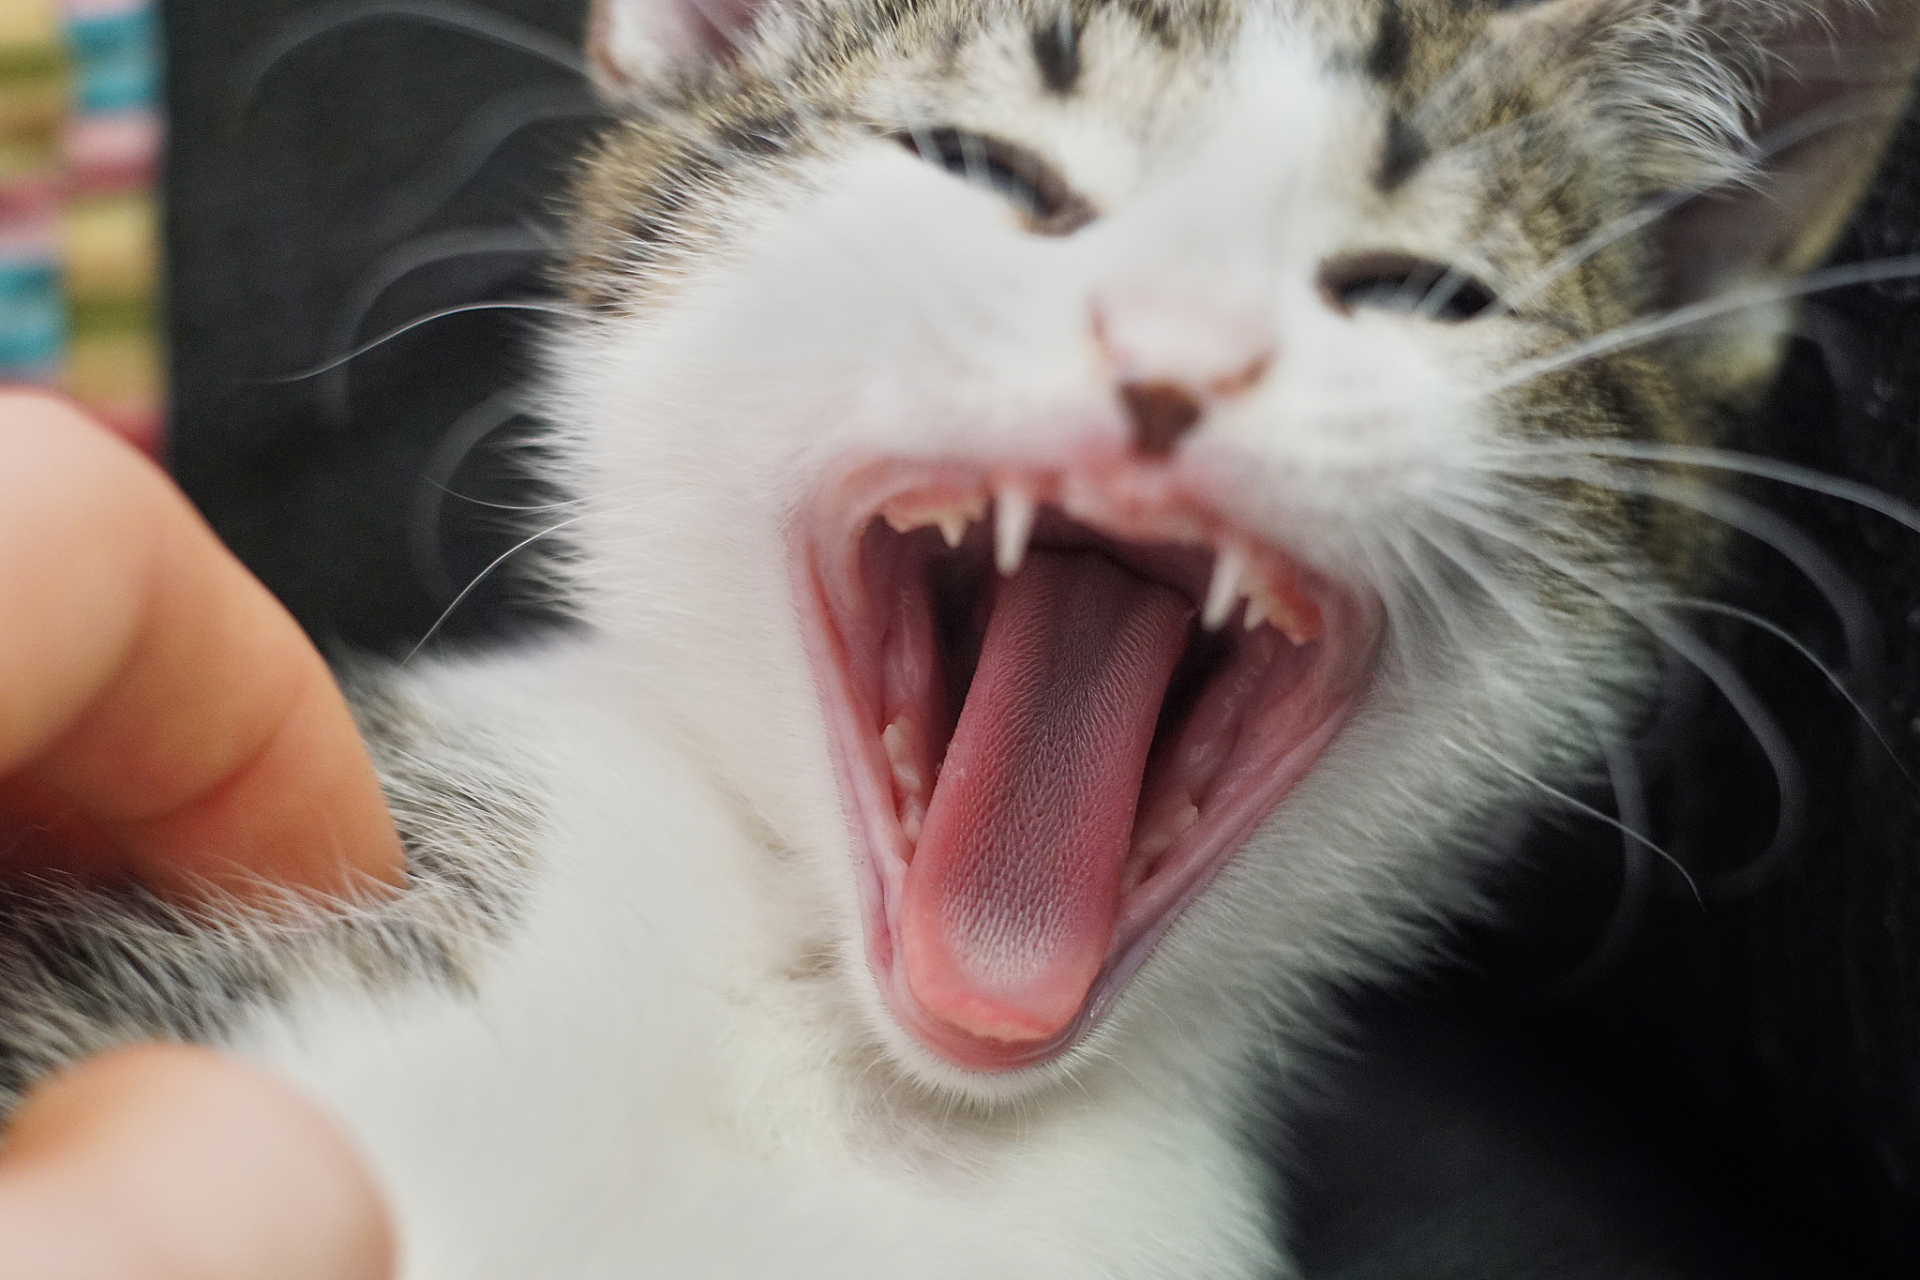 摘要:猫咪的虎牙不仅美观,其露出程度还与行为,生理和心理状态相关